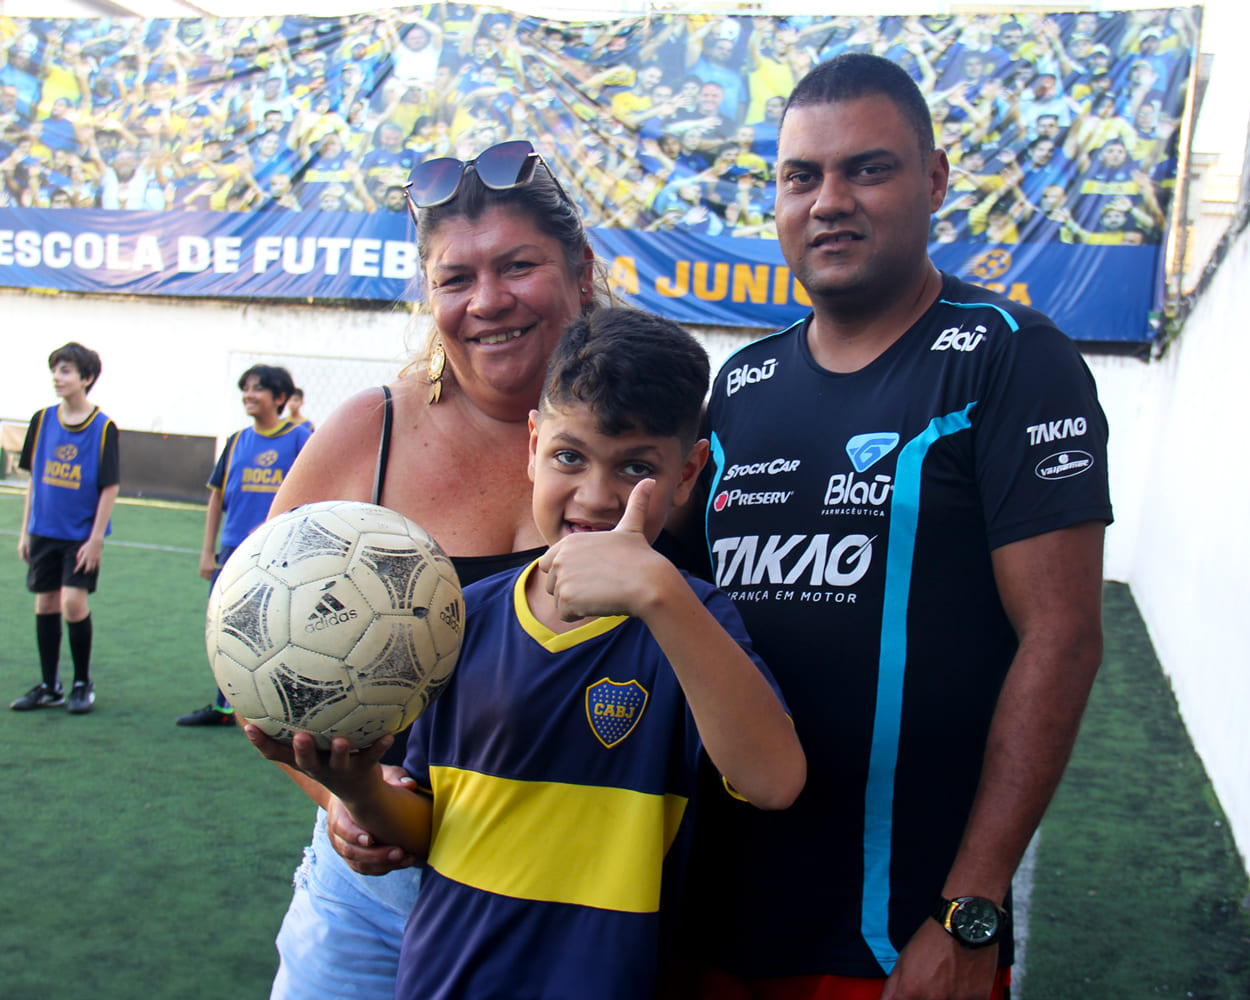 O jovem Enzo está segurando a bola e acenando com um sinal de positivo. Ele usa o uniforme do Club Atlético Boca Juniors, nas cores azul e amarelo, e sorri. Atrás dele está a sua mãe, à esquerda, e o seu pai, à direita. Em segundo plano, no campo de futebol, há outros alunos da escolinha.